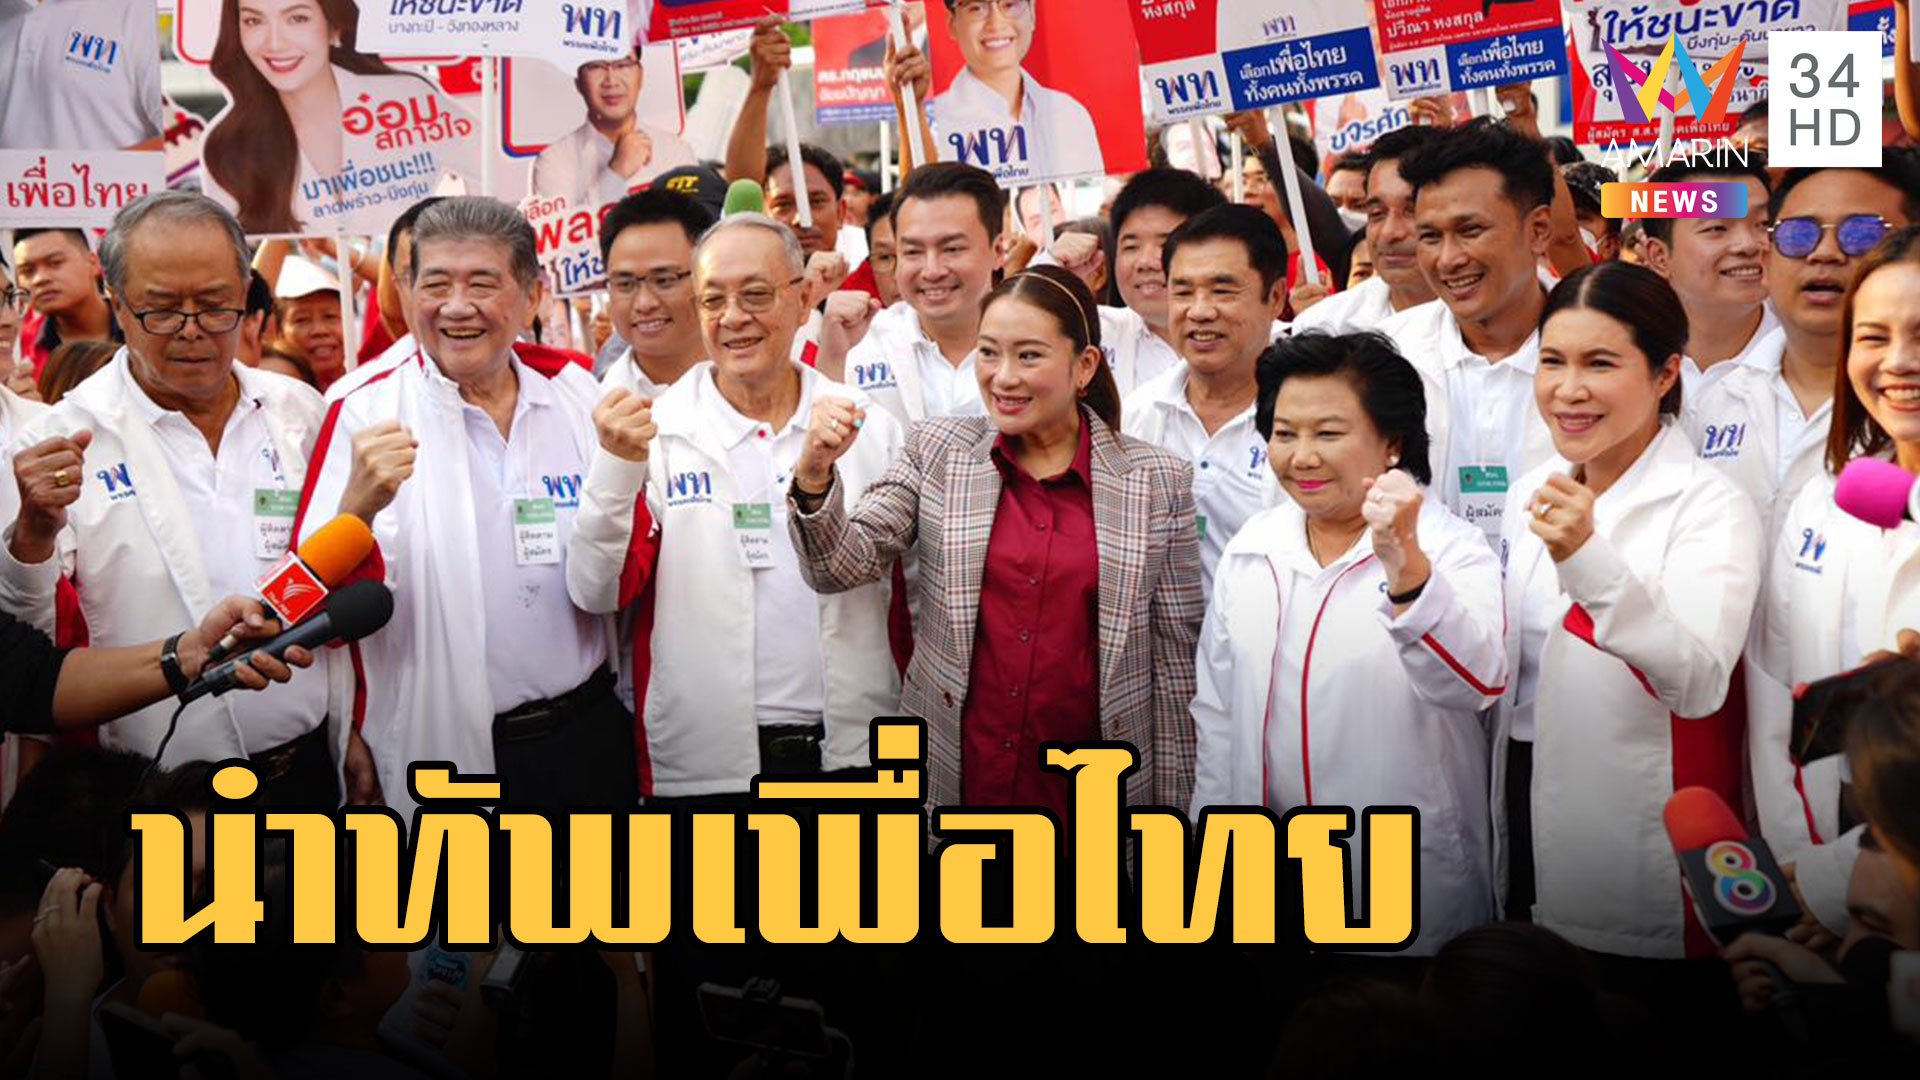 "อุ๊งอิ๊ง แพทองธาร" นำทีมเพื่อไทย สมัคร ส.ส. พร้อมลุยเลือกตั้ง 2566 | ข่าวอรุณอมรินทร์ | 3 เม.ย. 66 | AMARIN TVHD34